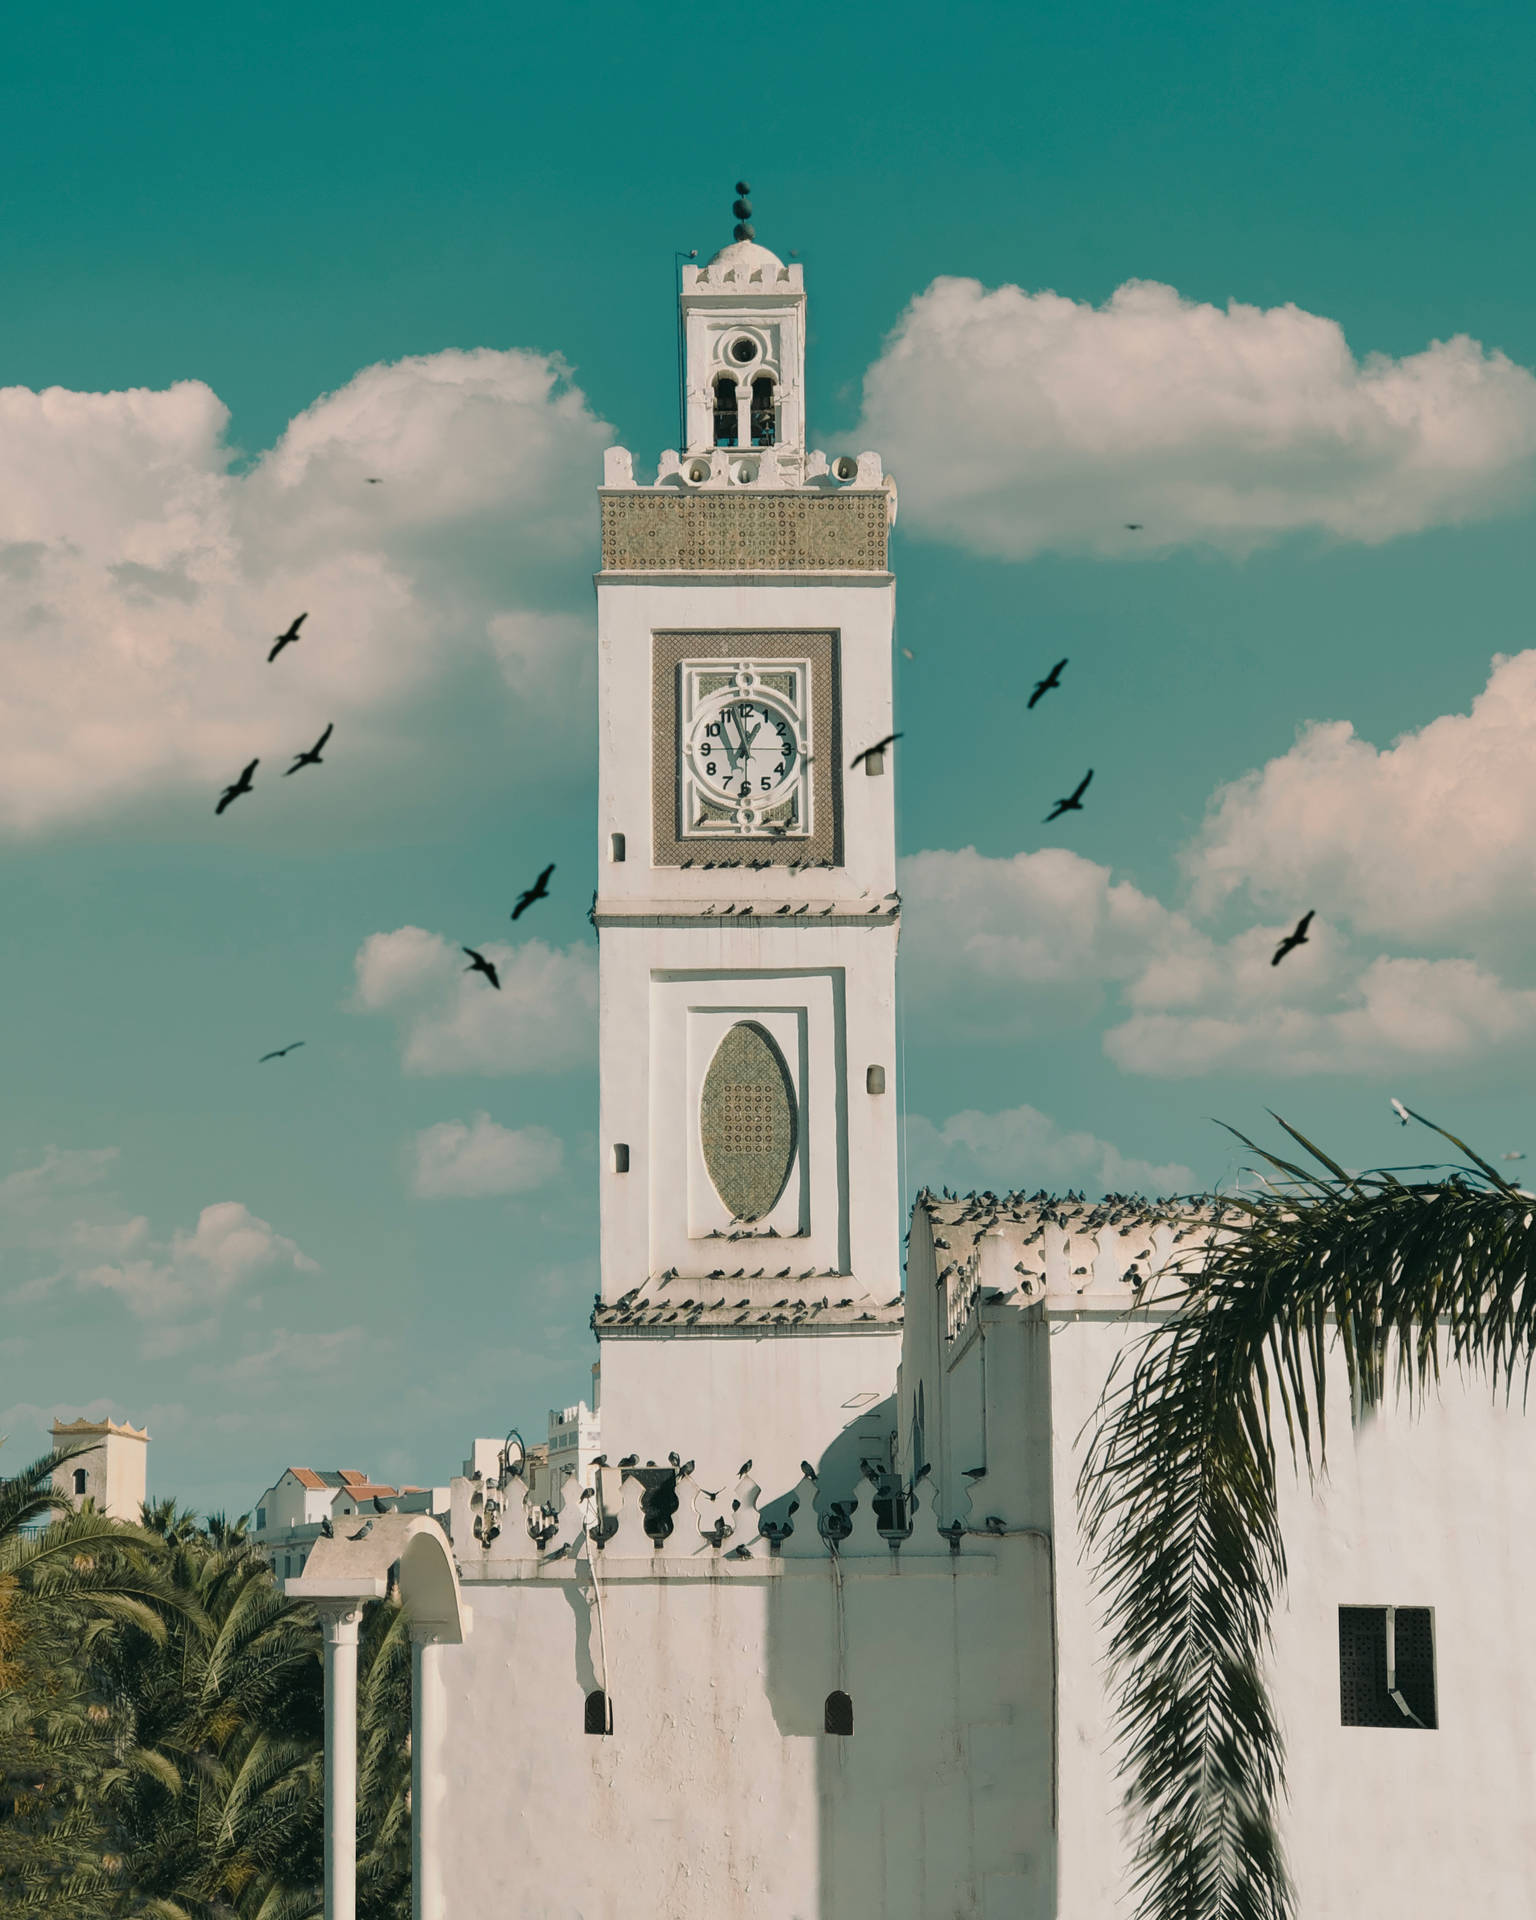 Algeria Building With Birds